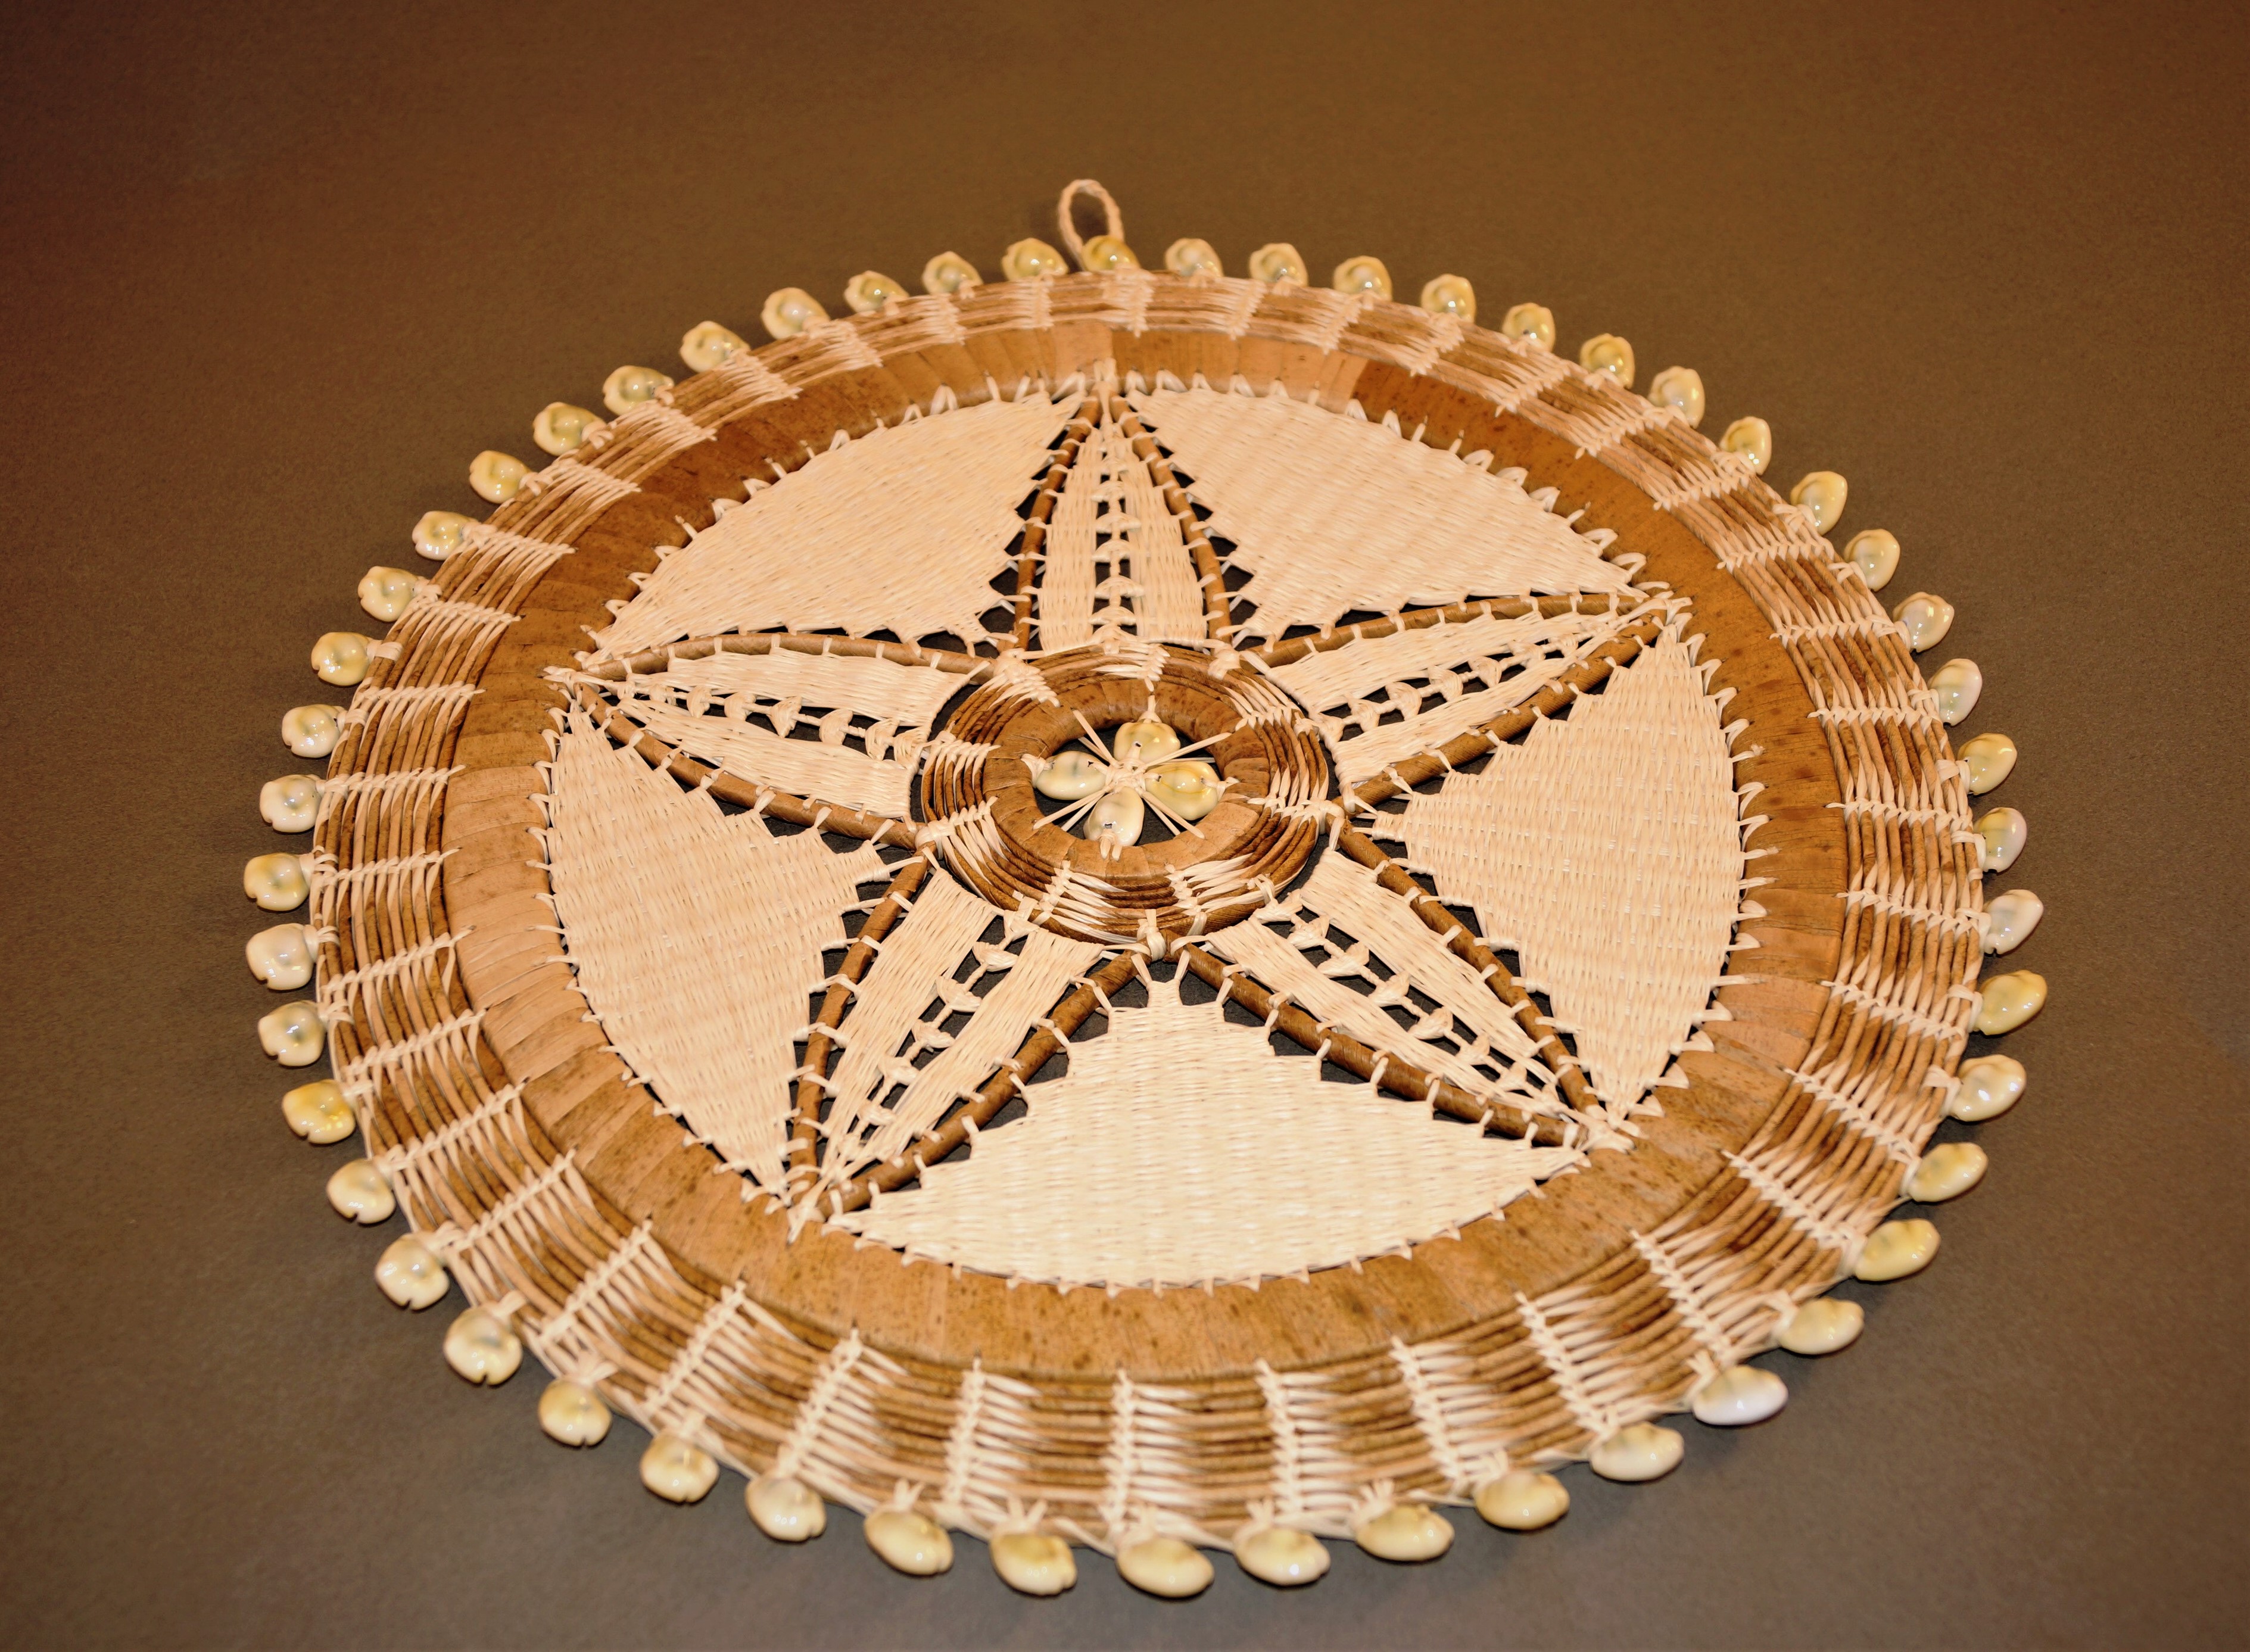 馬紹爾群島共和國國會議長凱迪閣下伉儷致贈手作編織類傳統特色藝品(貝殼藤編壁飾)-相關照片